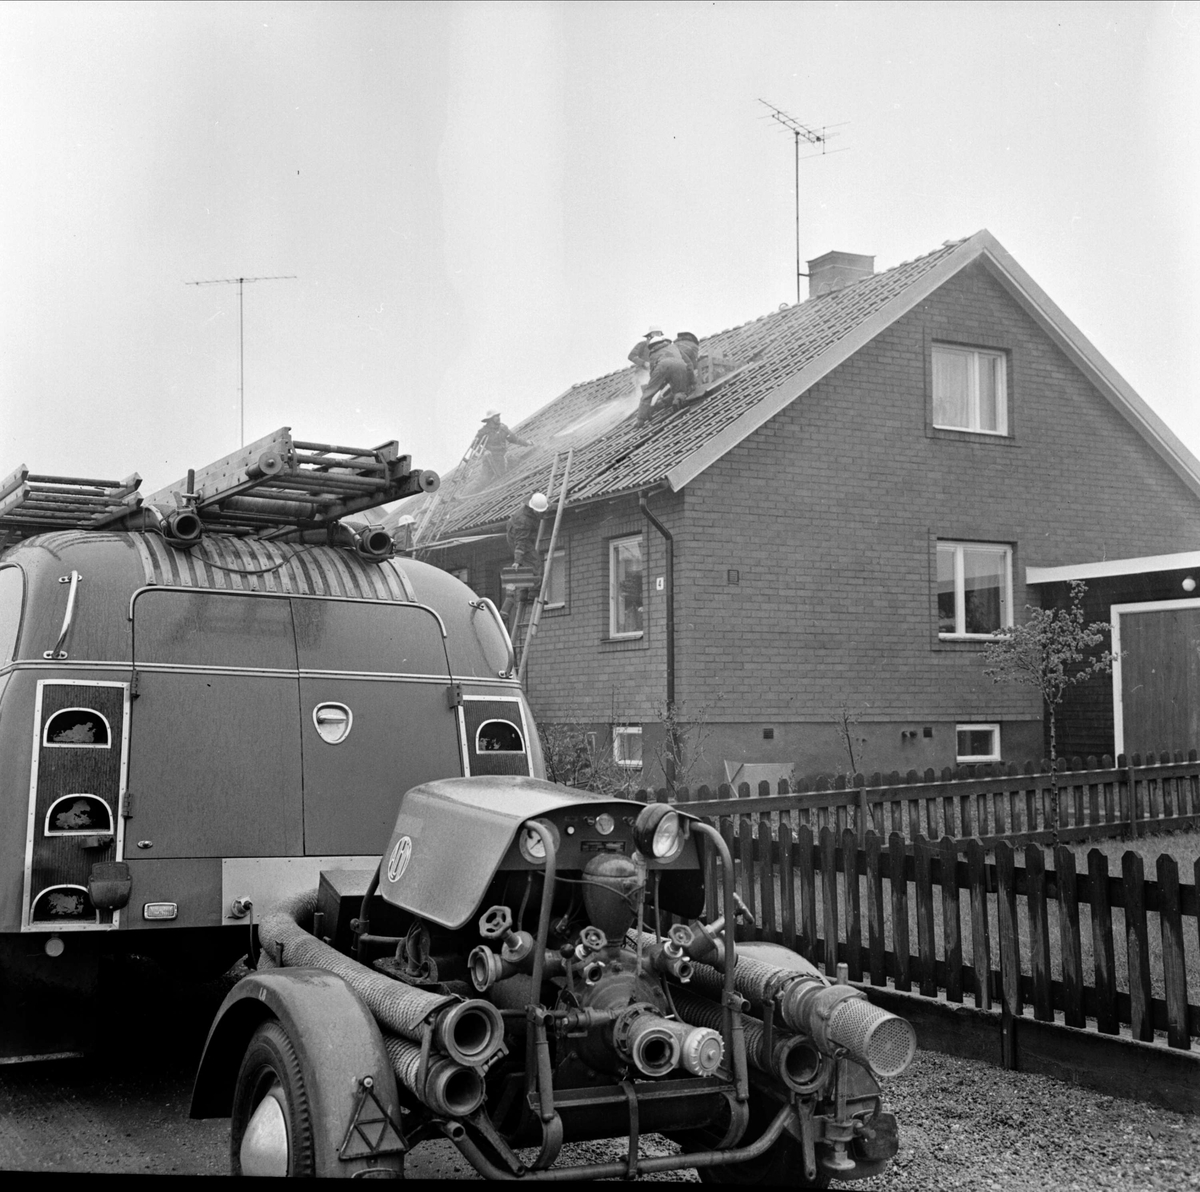 "Barns lek nära ödelägga villa" i Tierp, Uppland maj 1973